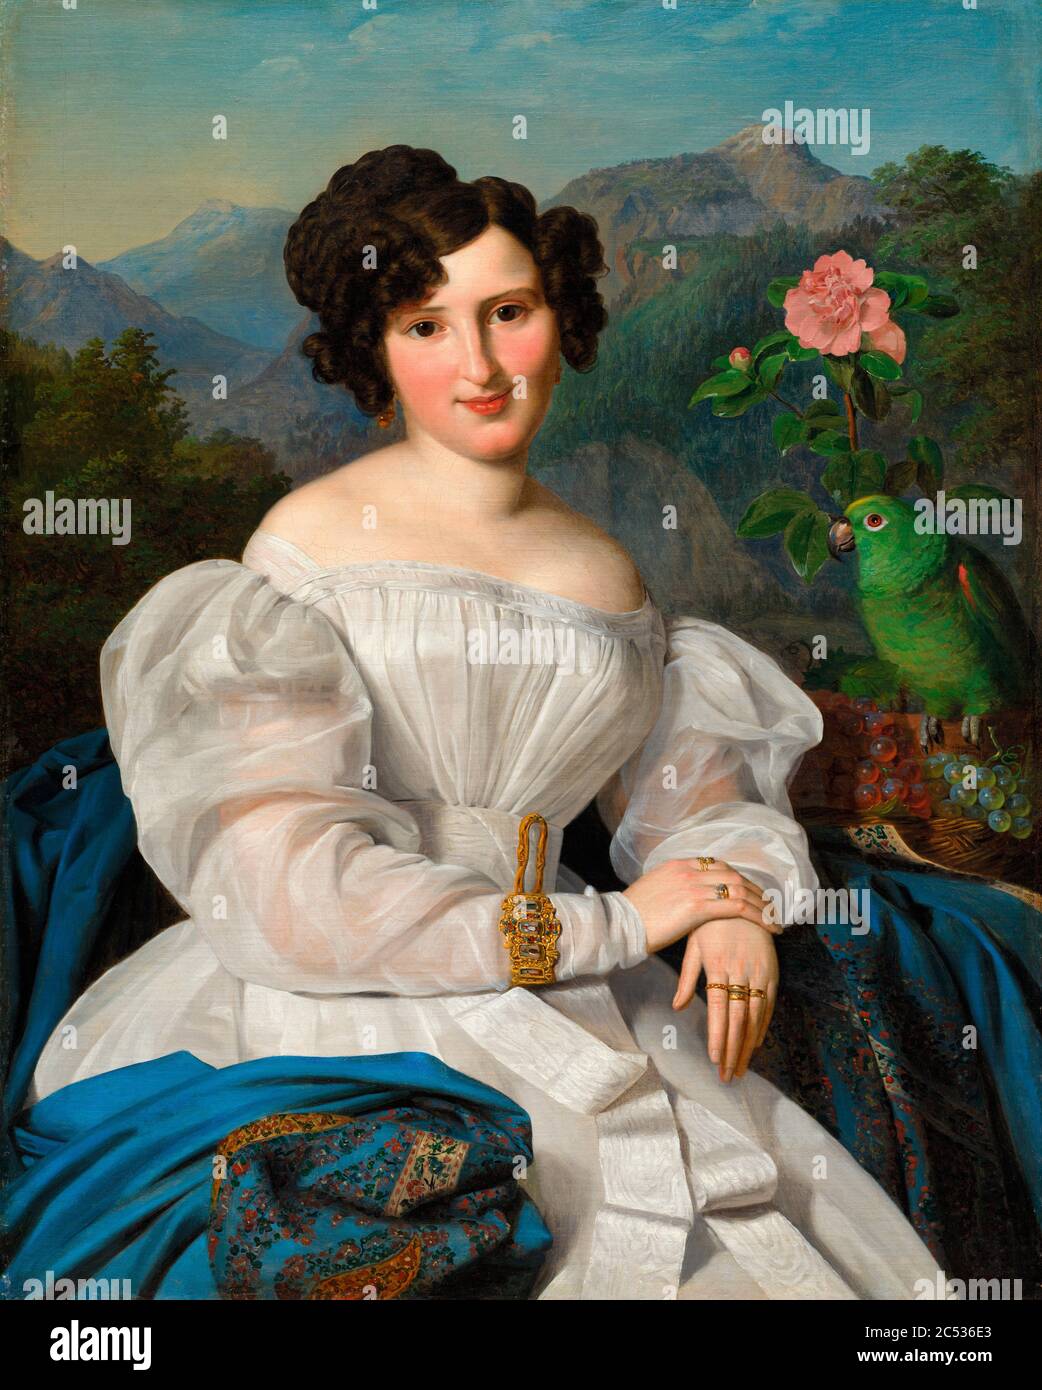 Countess Szechenyi by Ferdinand Georg Waldmuller, 1828 Stock Photo